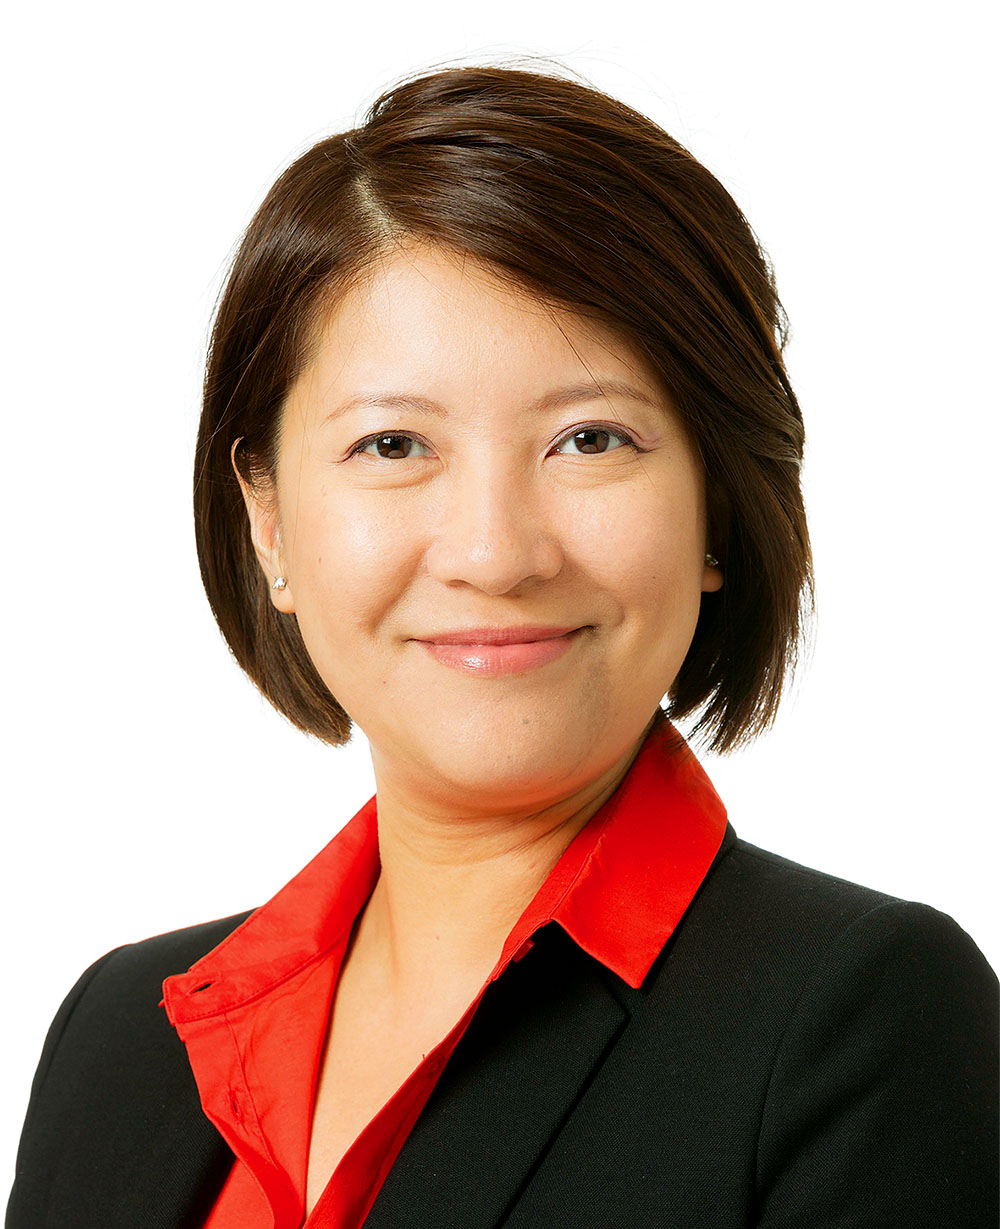 VIR nên tích hợp công nghệ vào các  sản phẩm.	 	- Bà Winnie Lam, Tổng thư ký Hiệp hội  doanh nghiệp Hồng Kông tại Việt Nam, Chủ tịch Hiệp hội Thương mại Canada (CanCham) tại Việt Nam